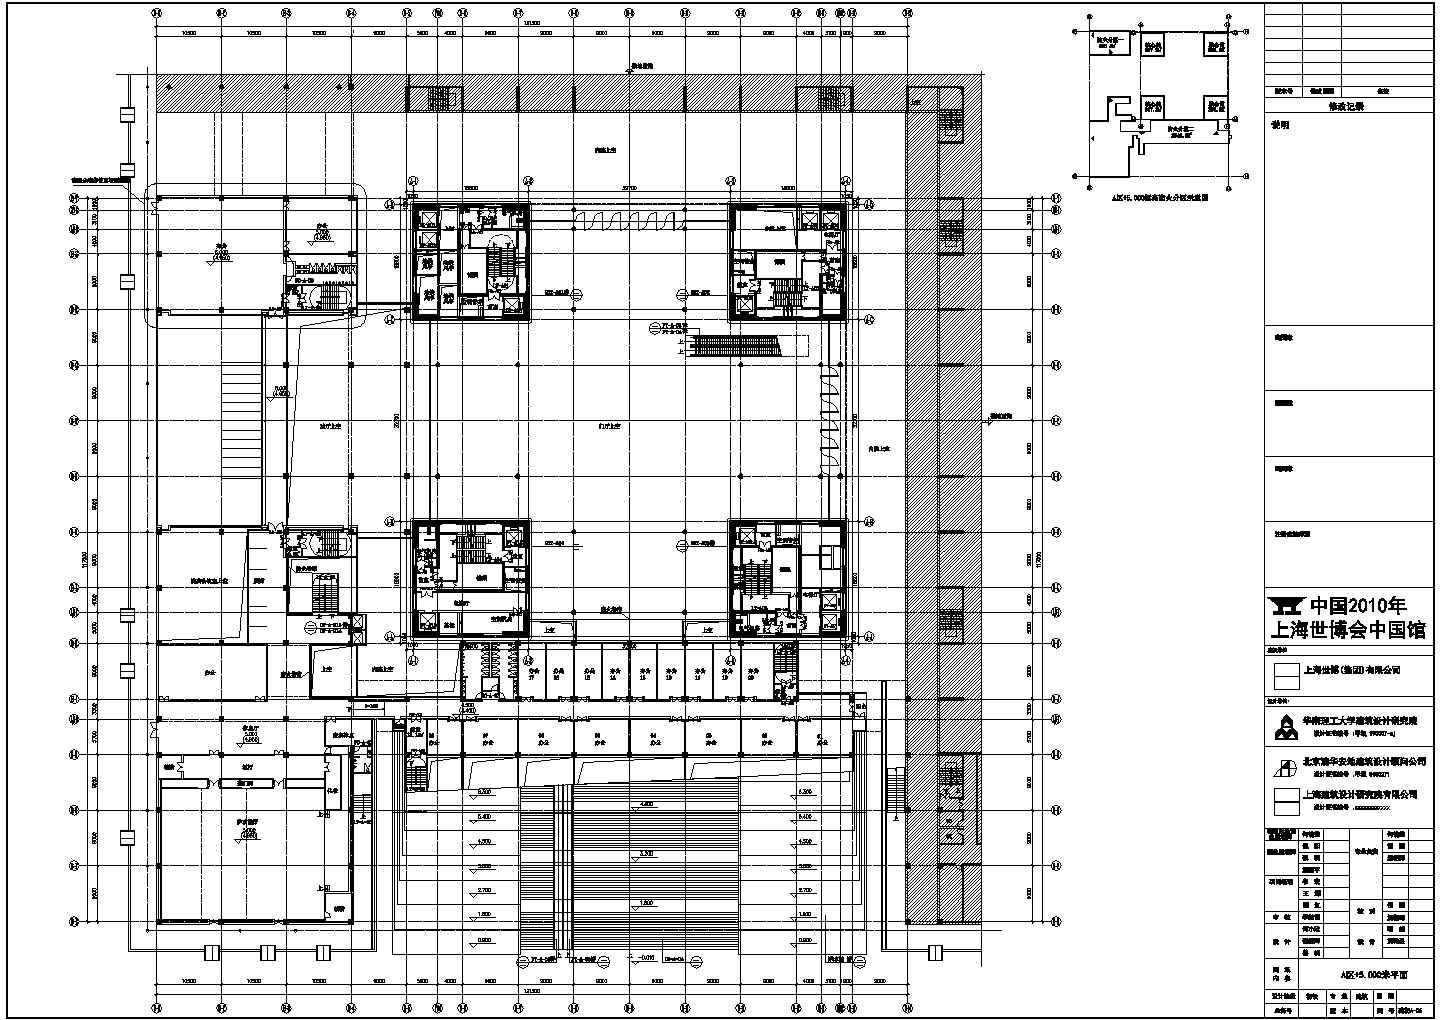 某世博会中国馆CAD室内装修设计施工图国家馆平面图(地面)